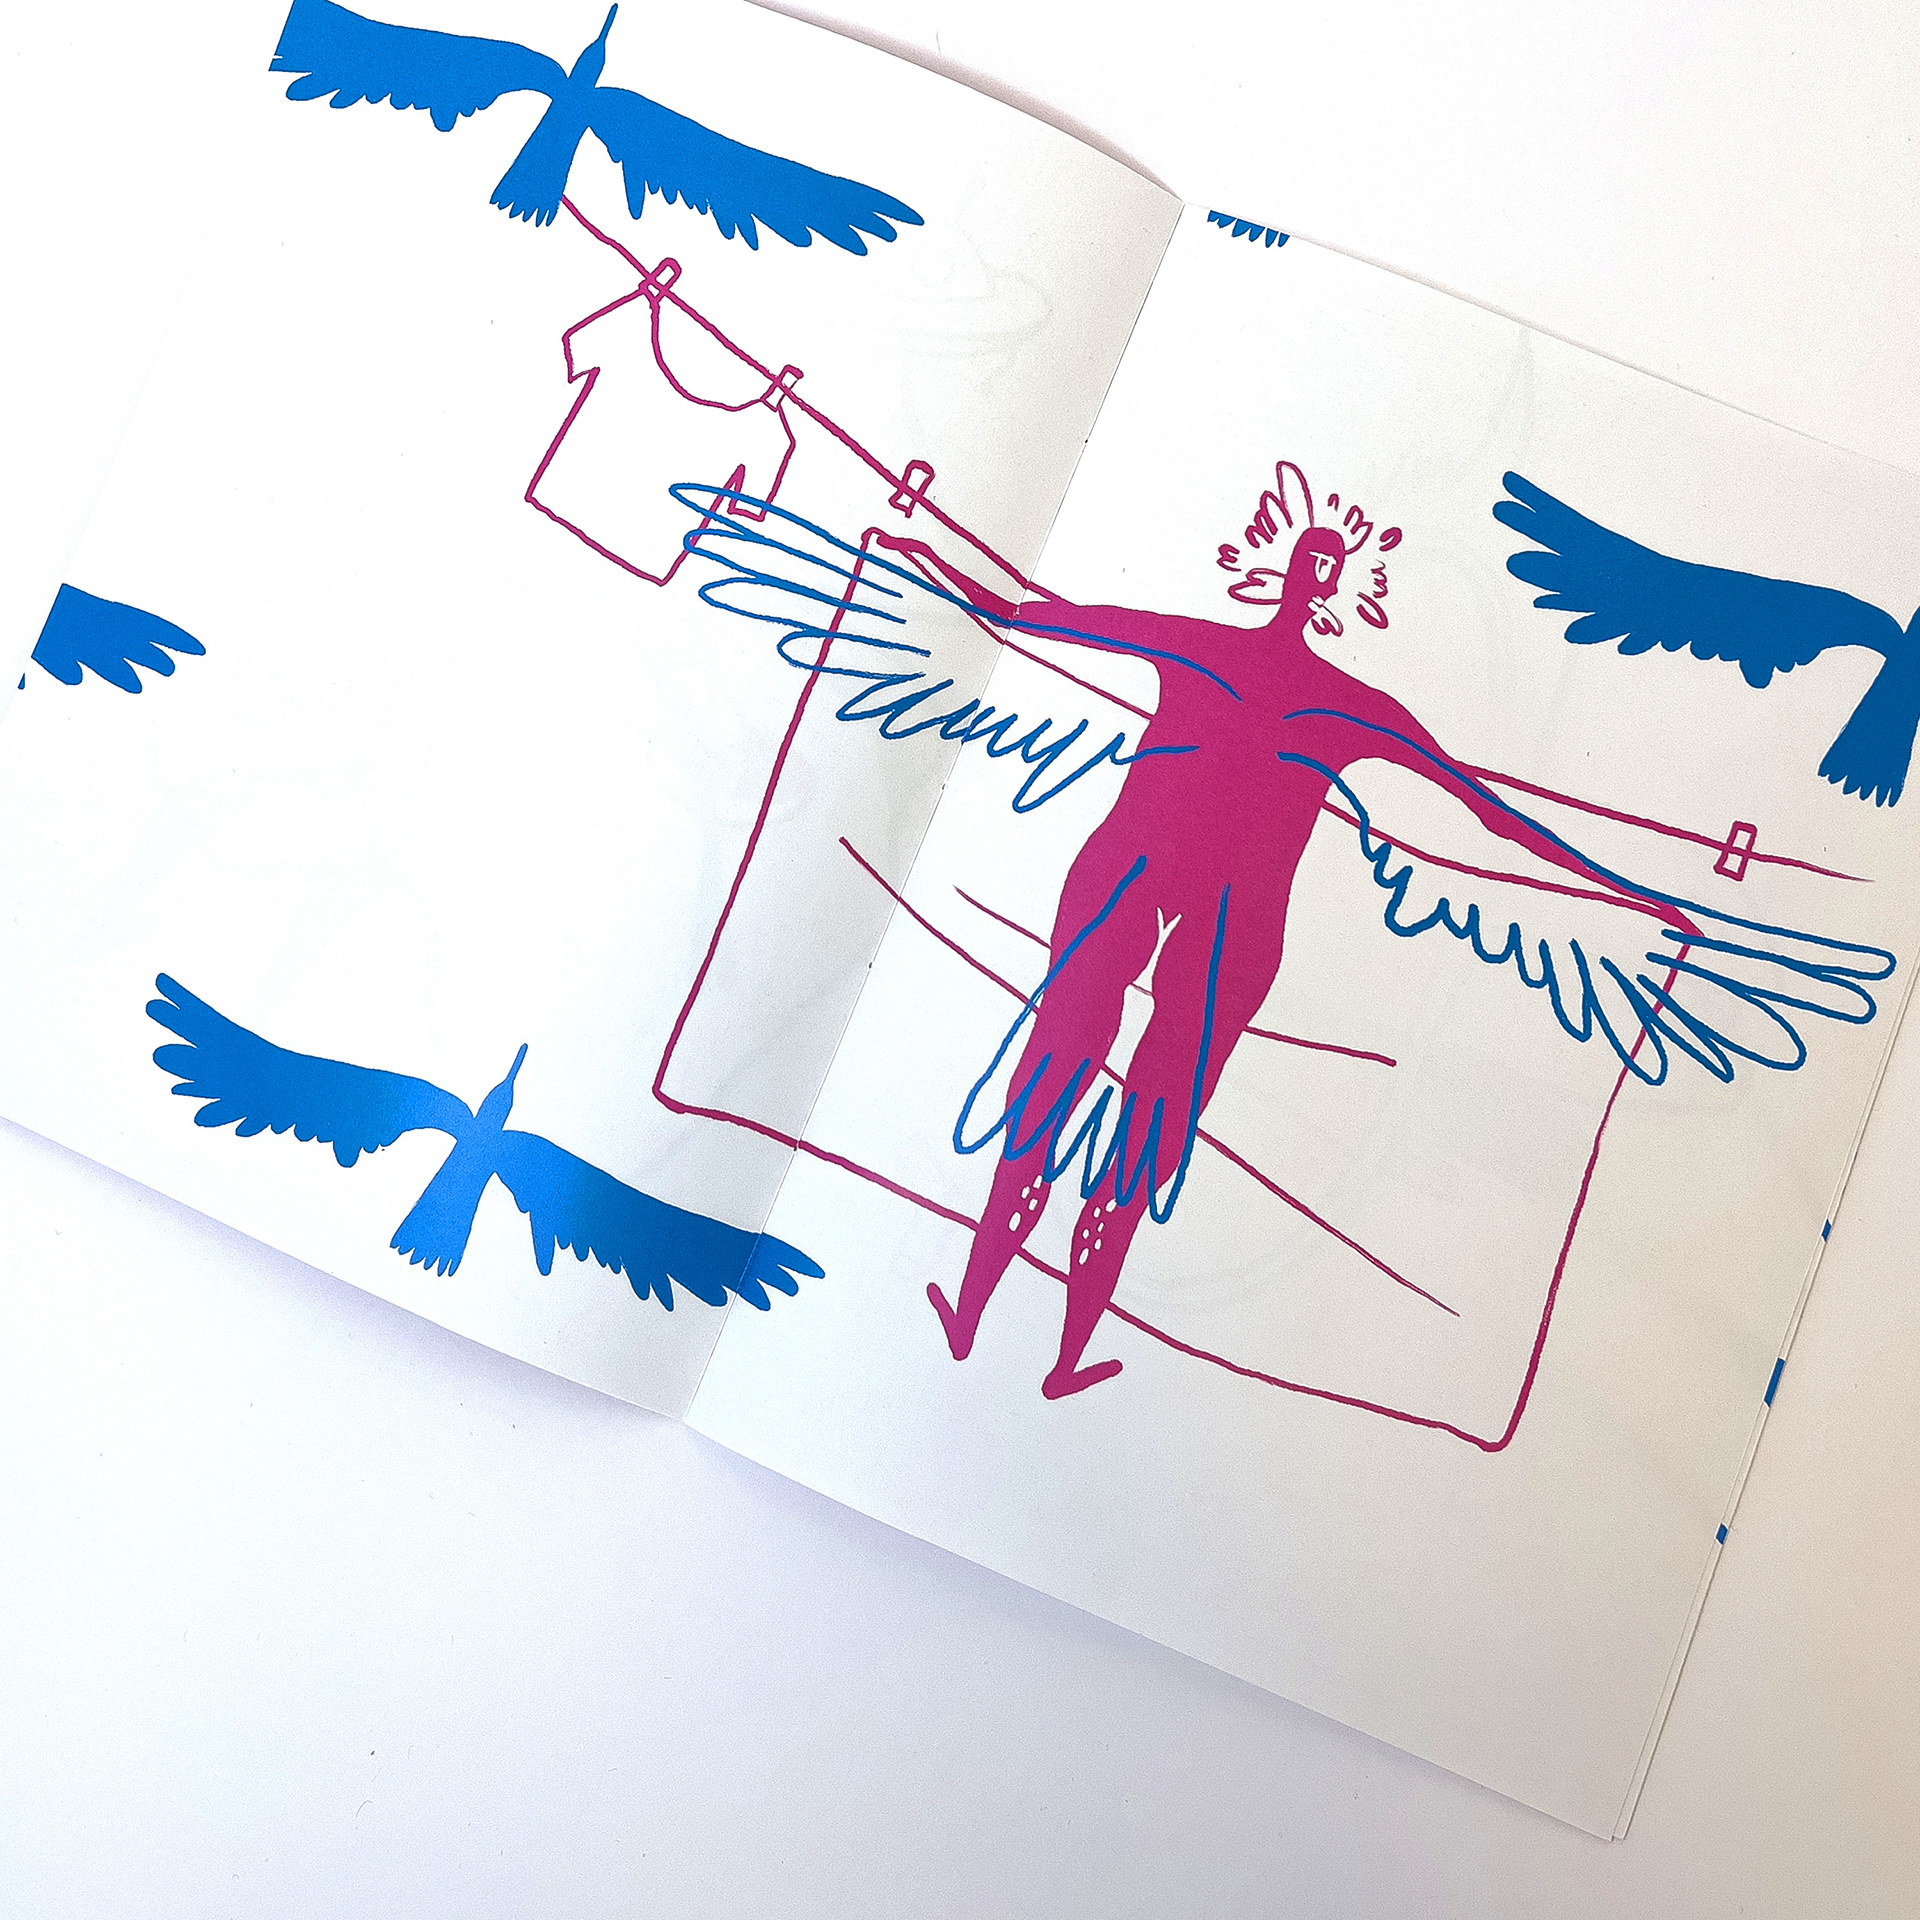 Fotografia przedstawia rozkładówkę folderu widoczna ilustracja w kolorach niebiesko różowym przedstawiająca kobietę wieszającą pranie z dorysowanymi skrzydłami.